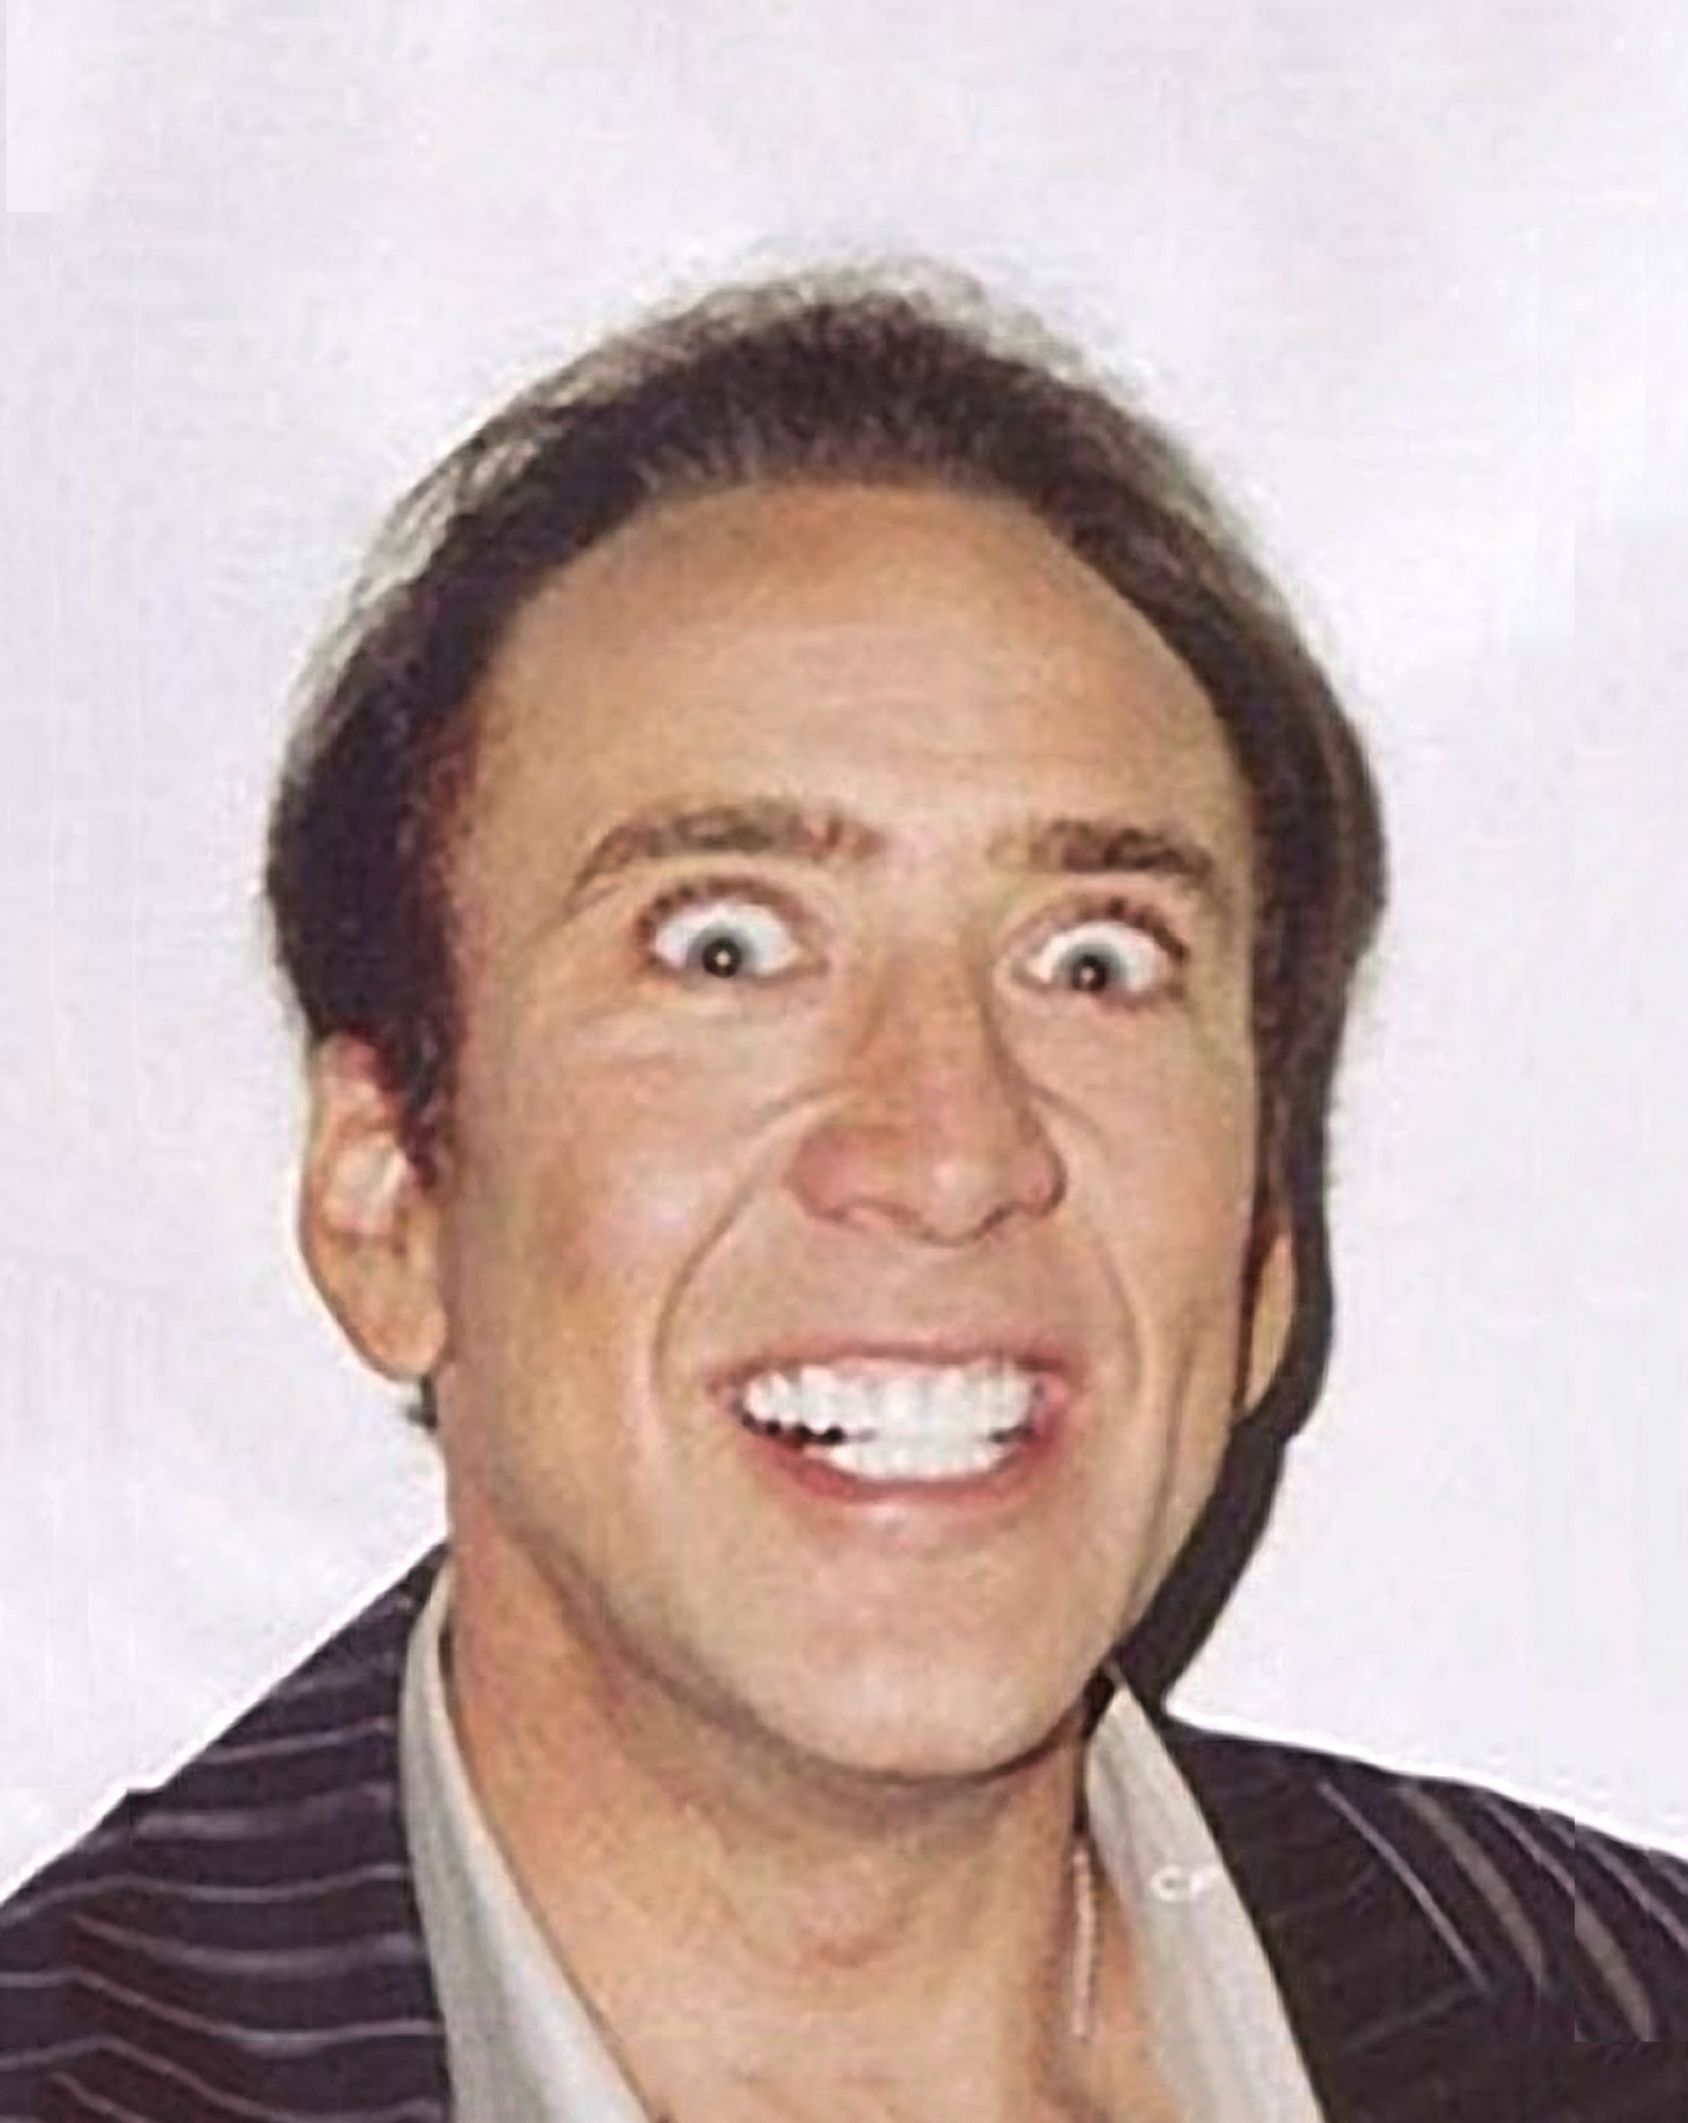 Crazy Nicolas Cage Big Photo. 